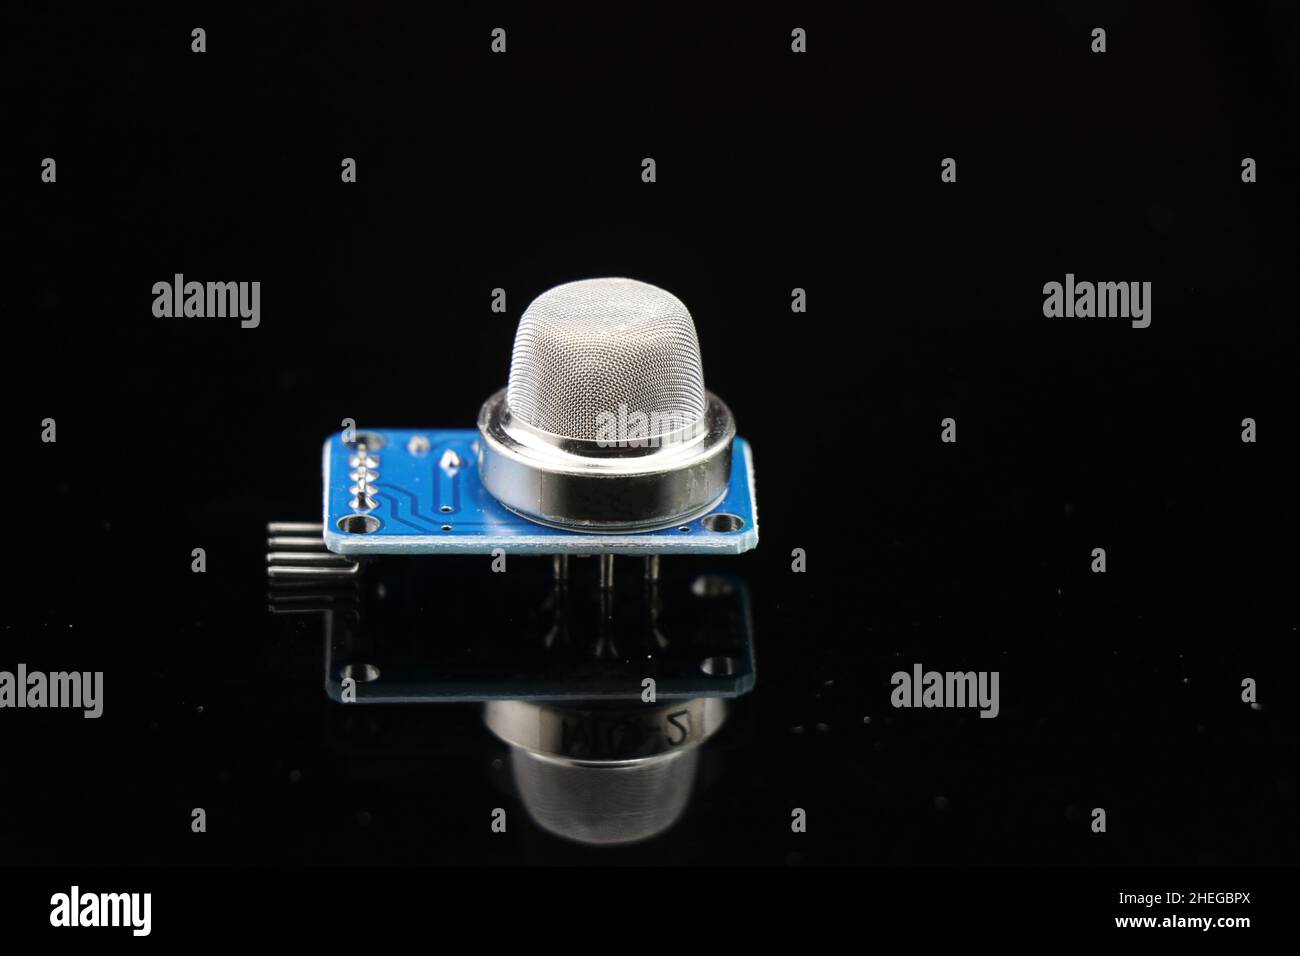 Gassensor für Arduino-Projekte, isoliert auf reflektierendem schwarzem Glashintergrund, mq2-Gassensor zur Erkennung von Gaslecks Stockfoto